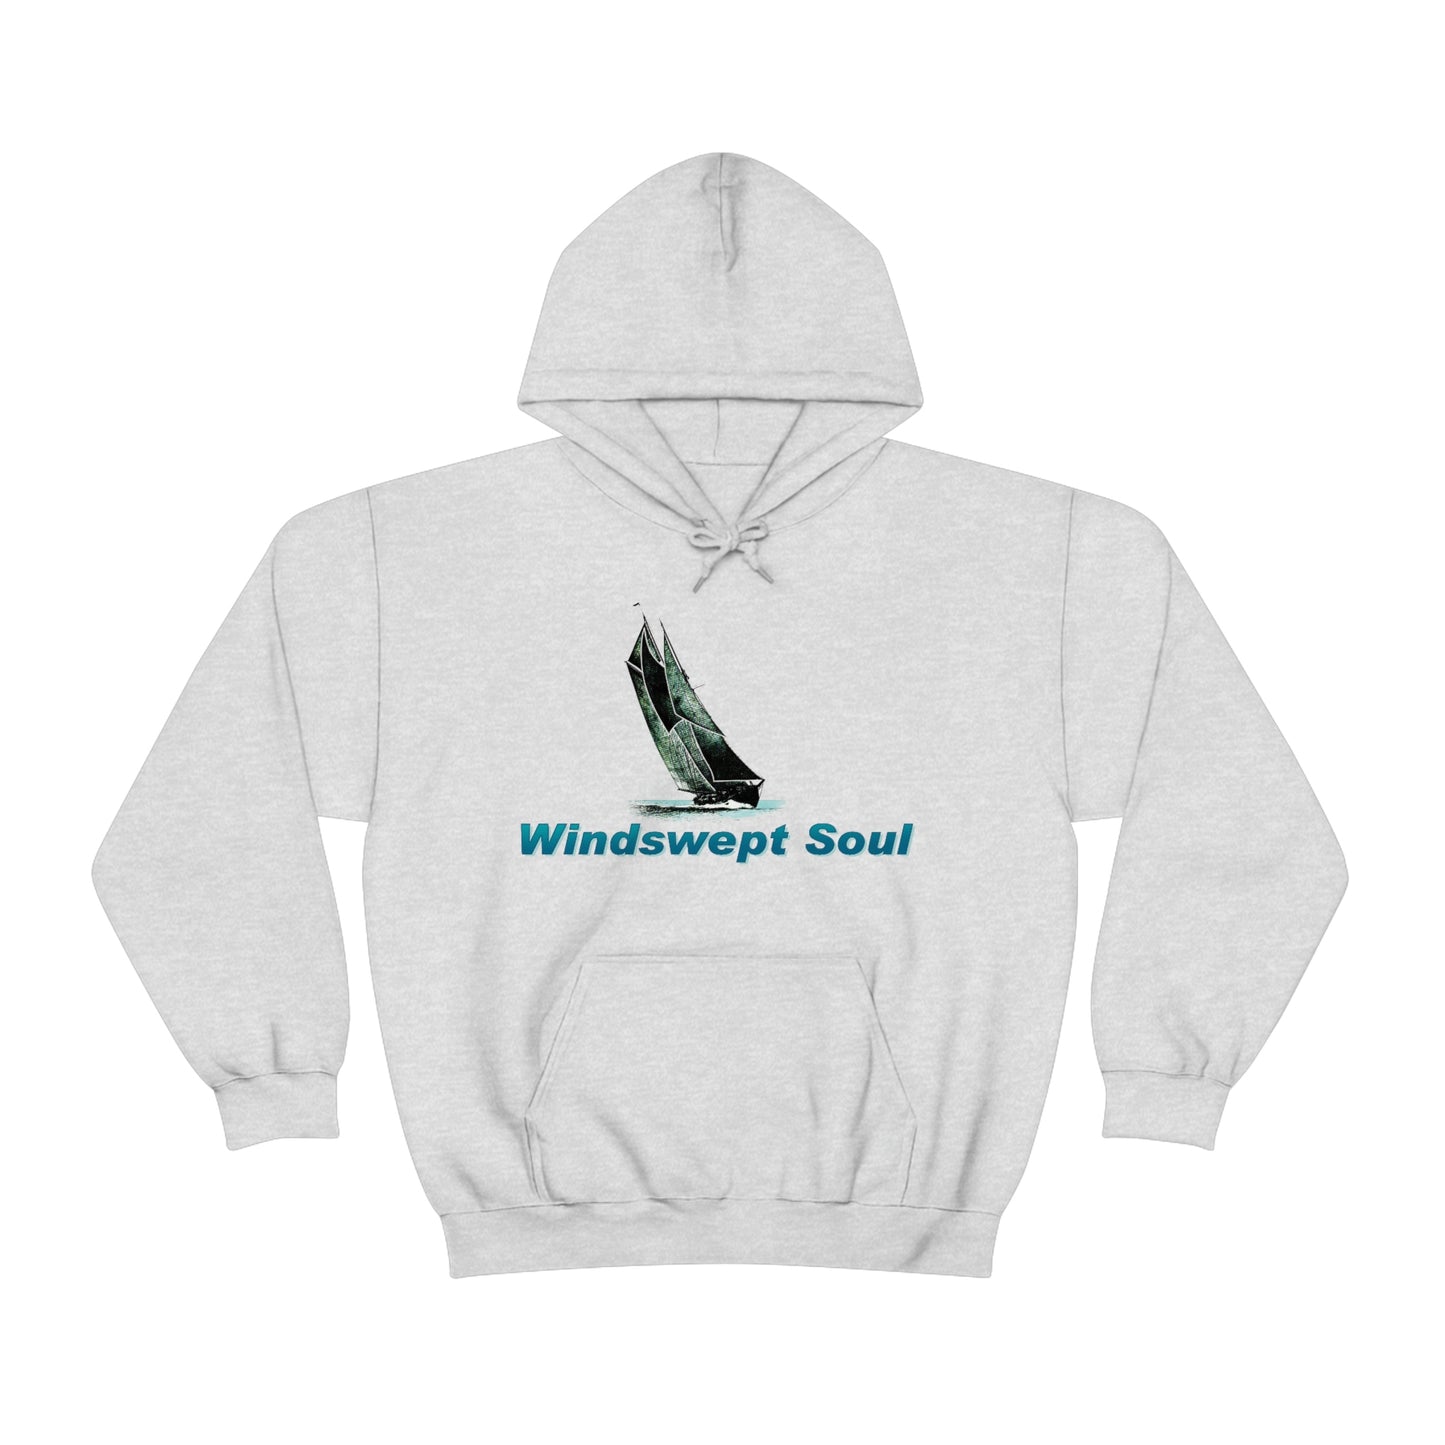 Unisex Heavy Blend™ Hooded Sweatshirt, Windswept Soul, Bluenose Sailboat.